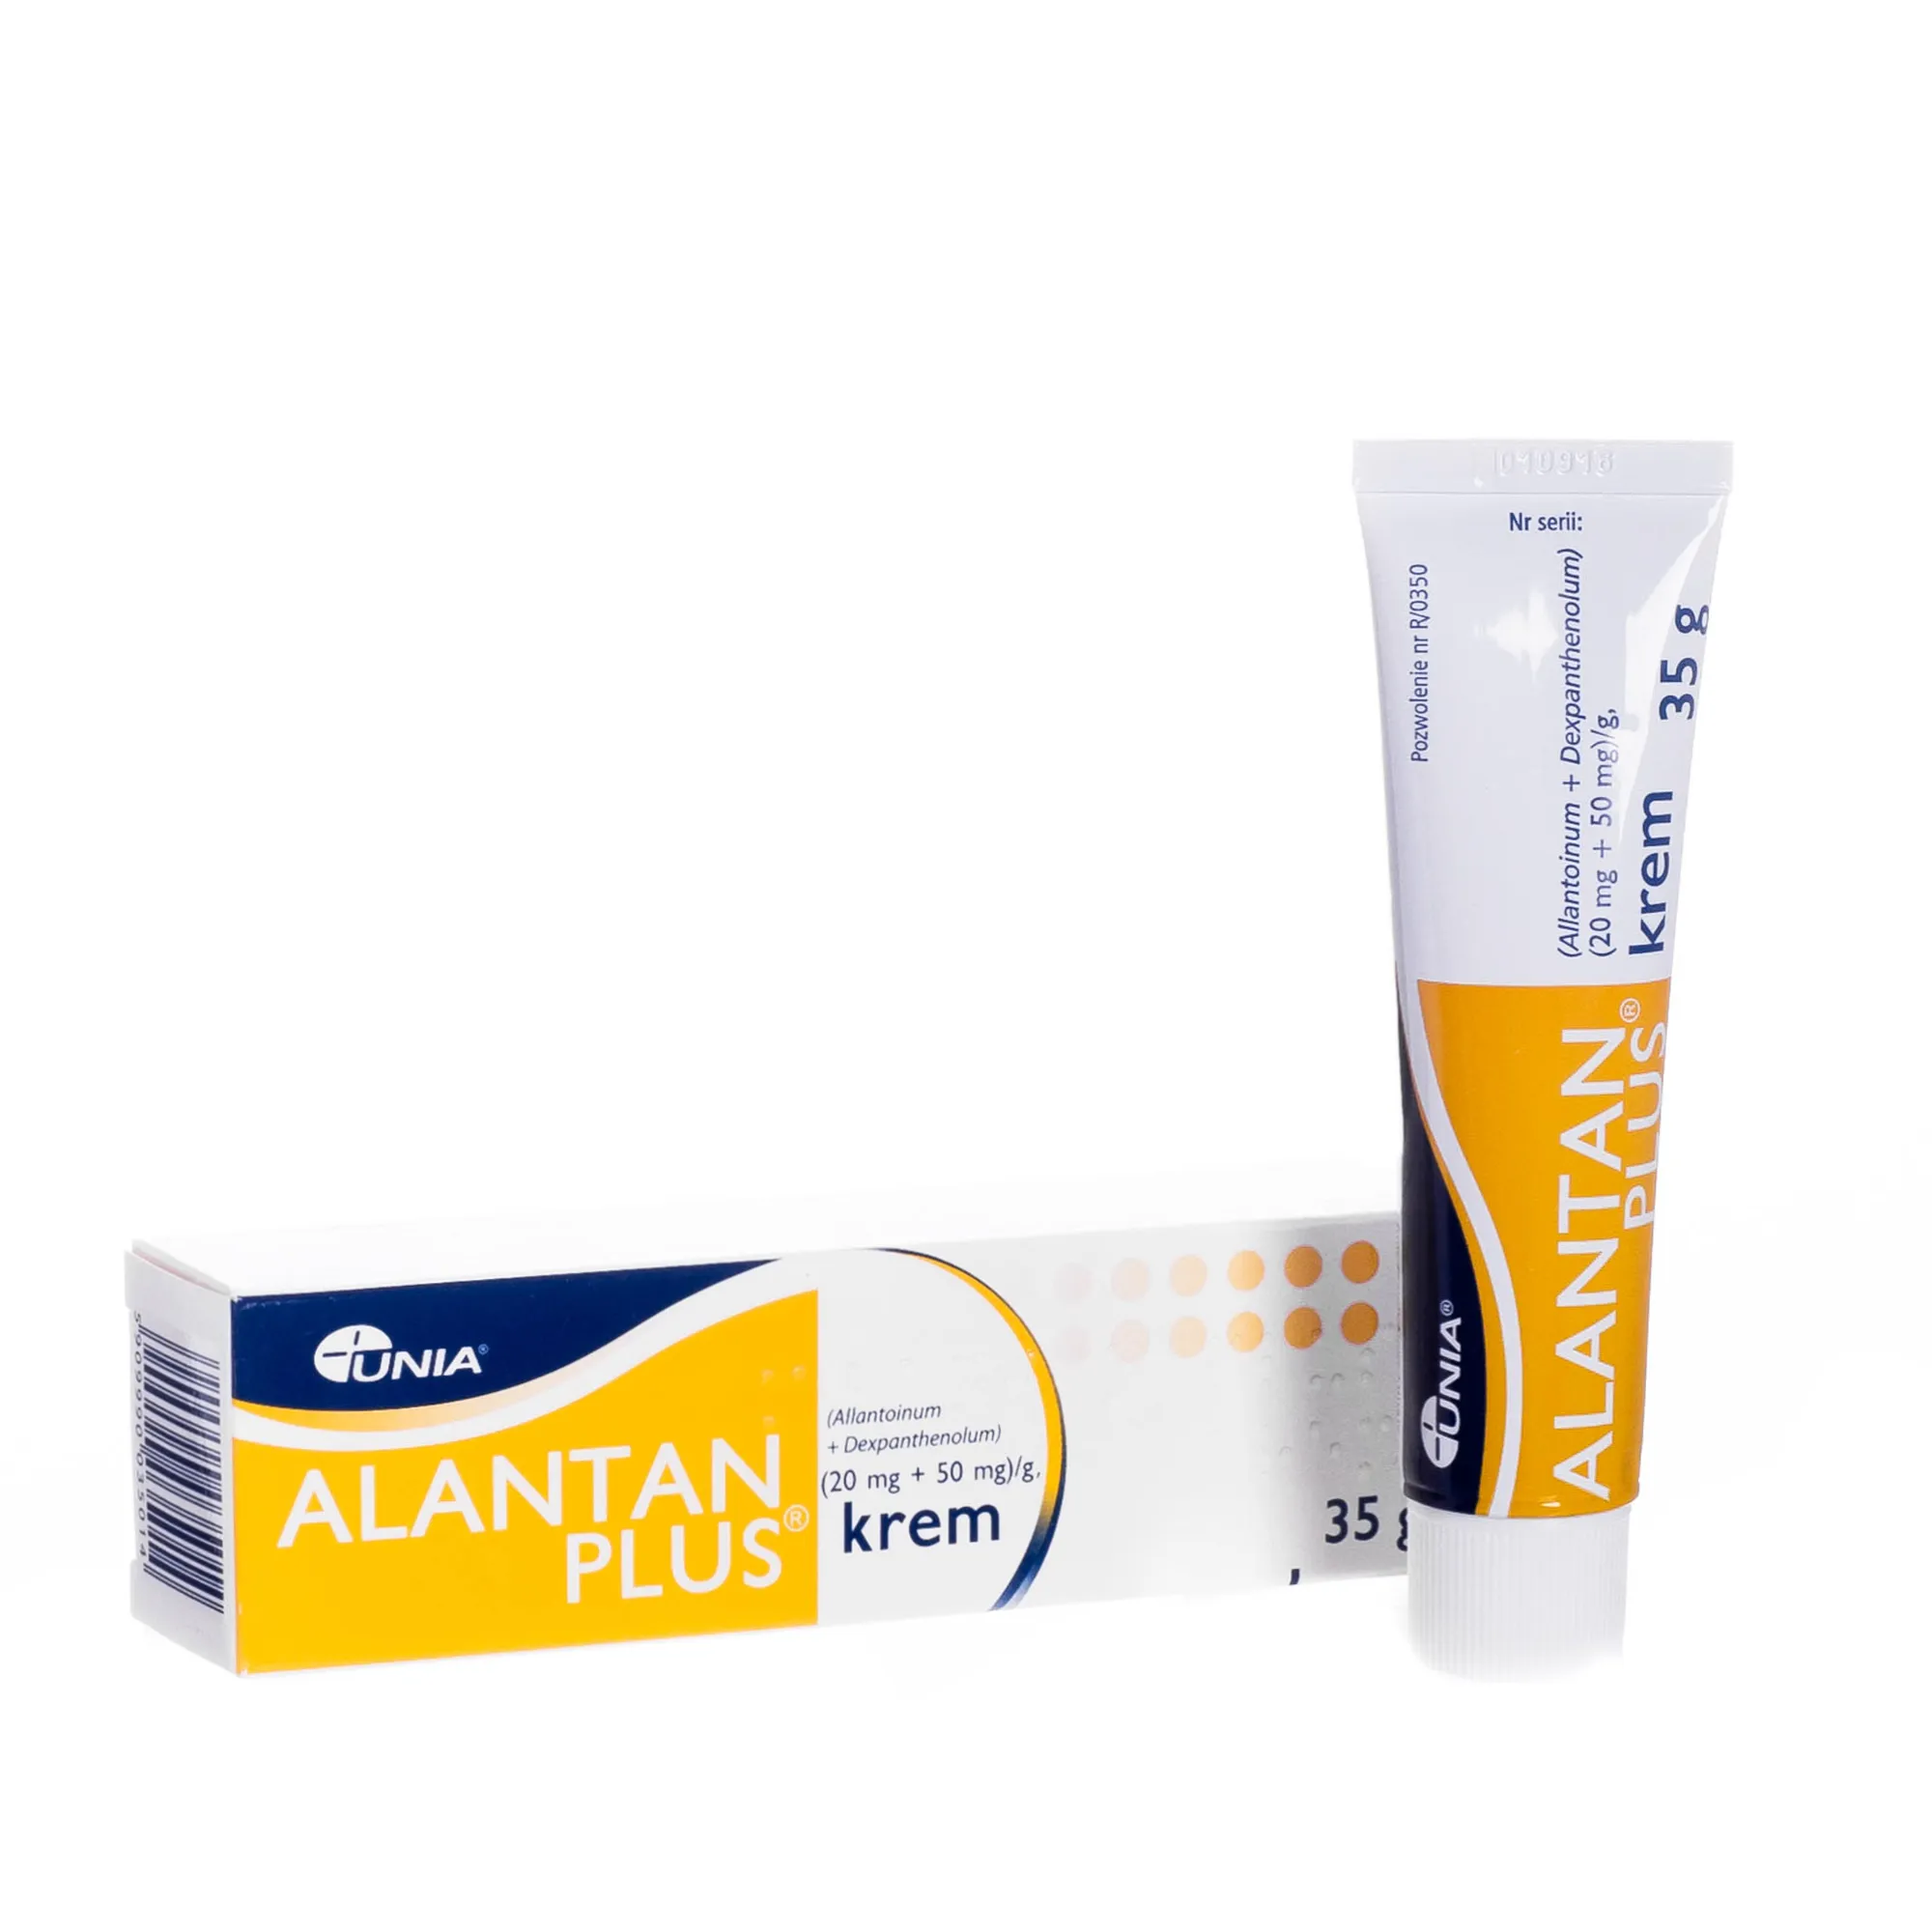 Alantan plus - krem pielęgnacyjny do skóry, 35 g.